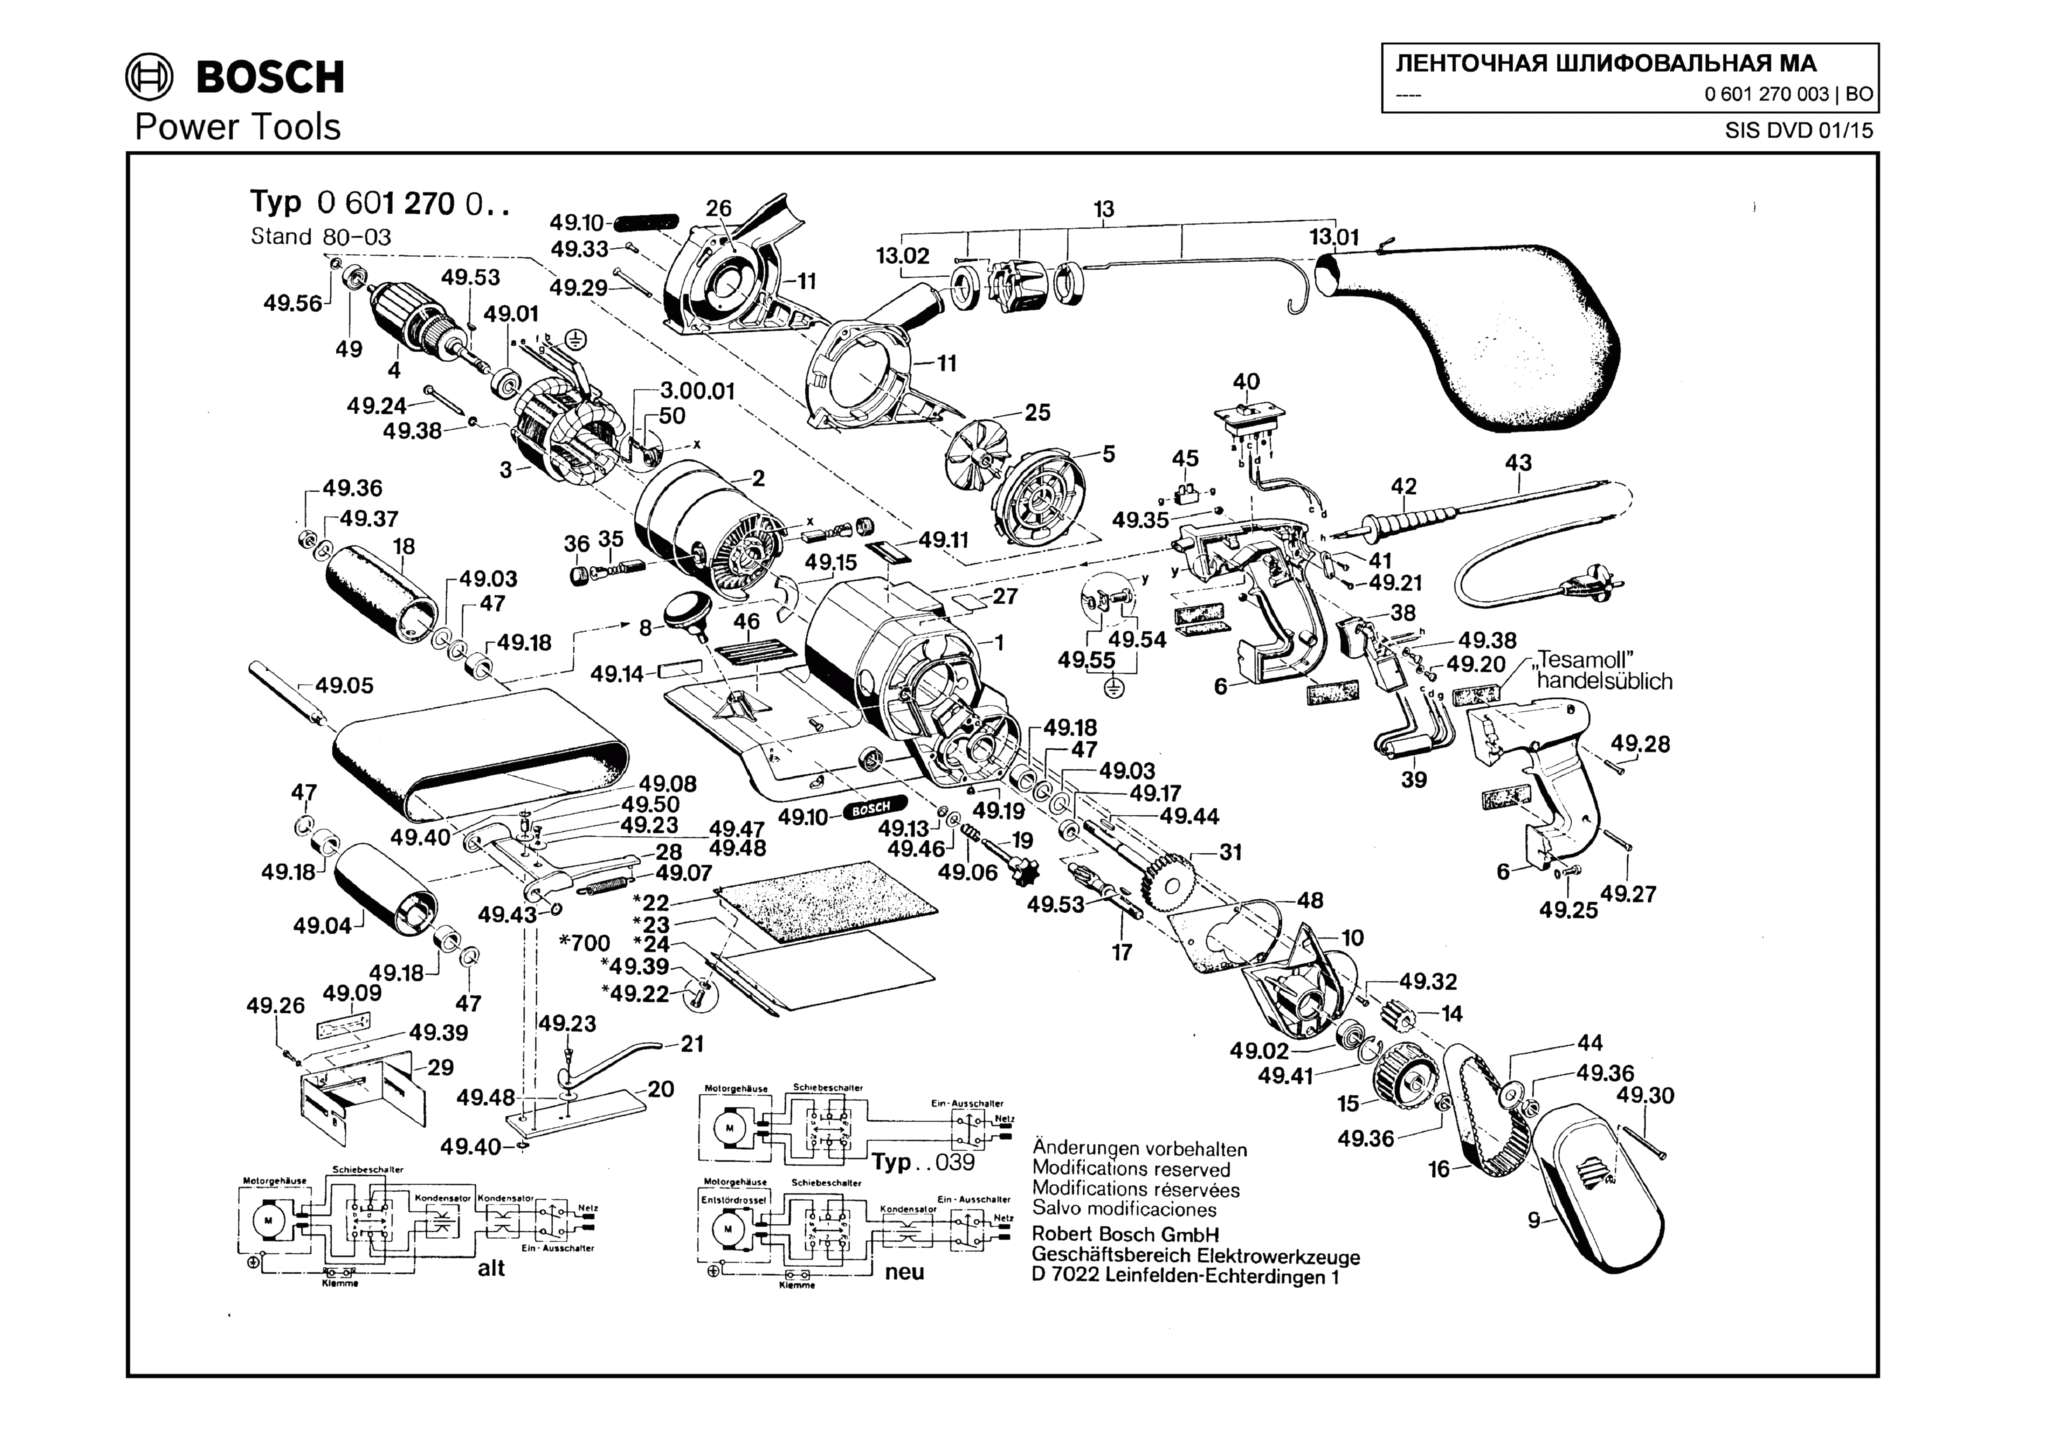 Запчасти, схема и деталировка Bosch (ТИП 0601270003)